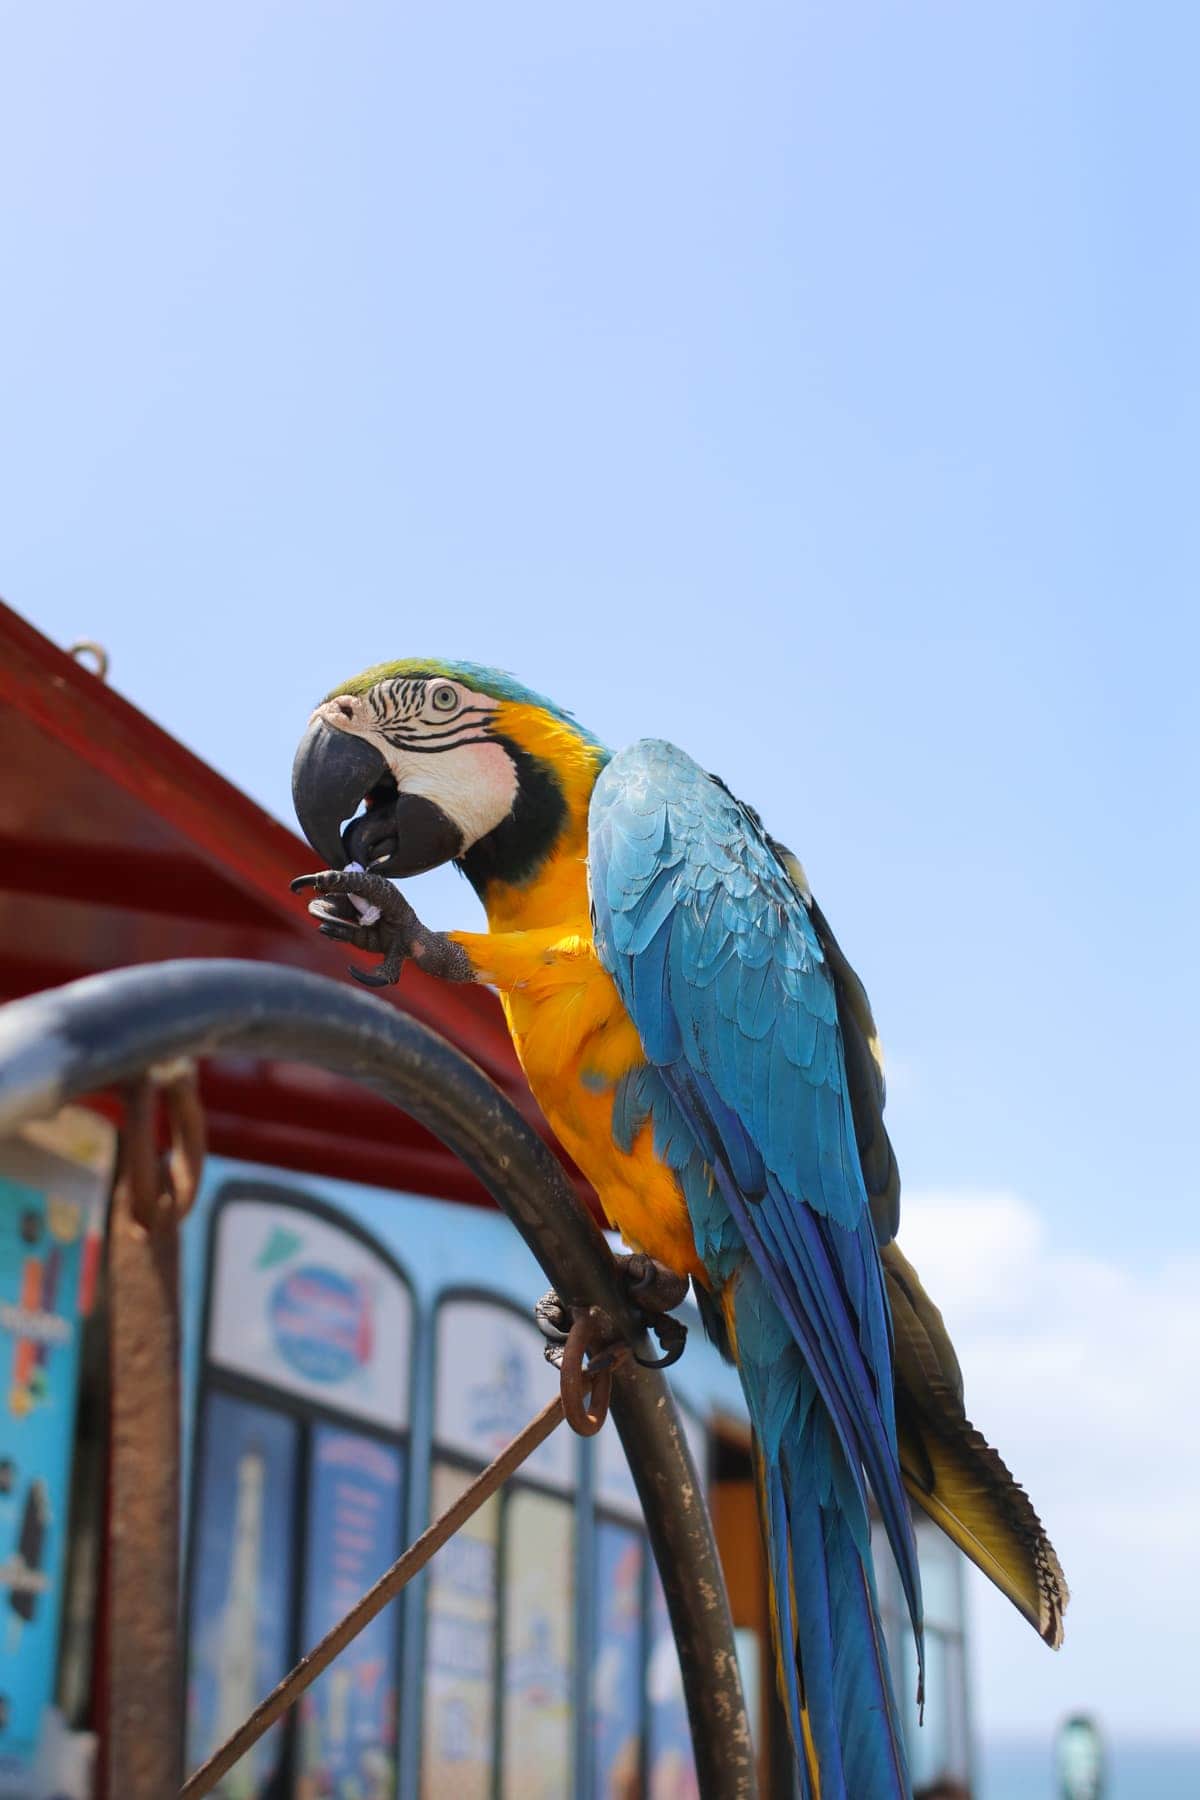 A macaw